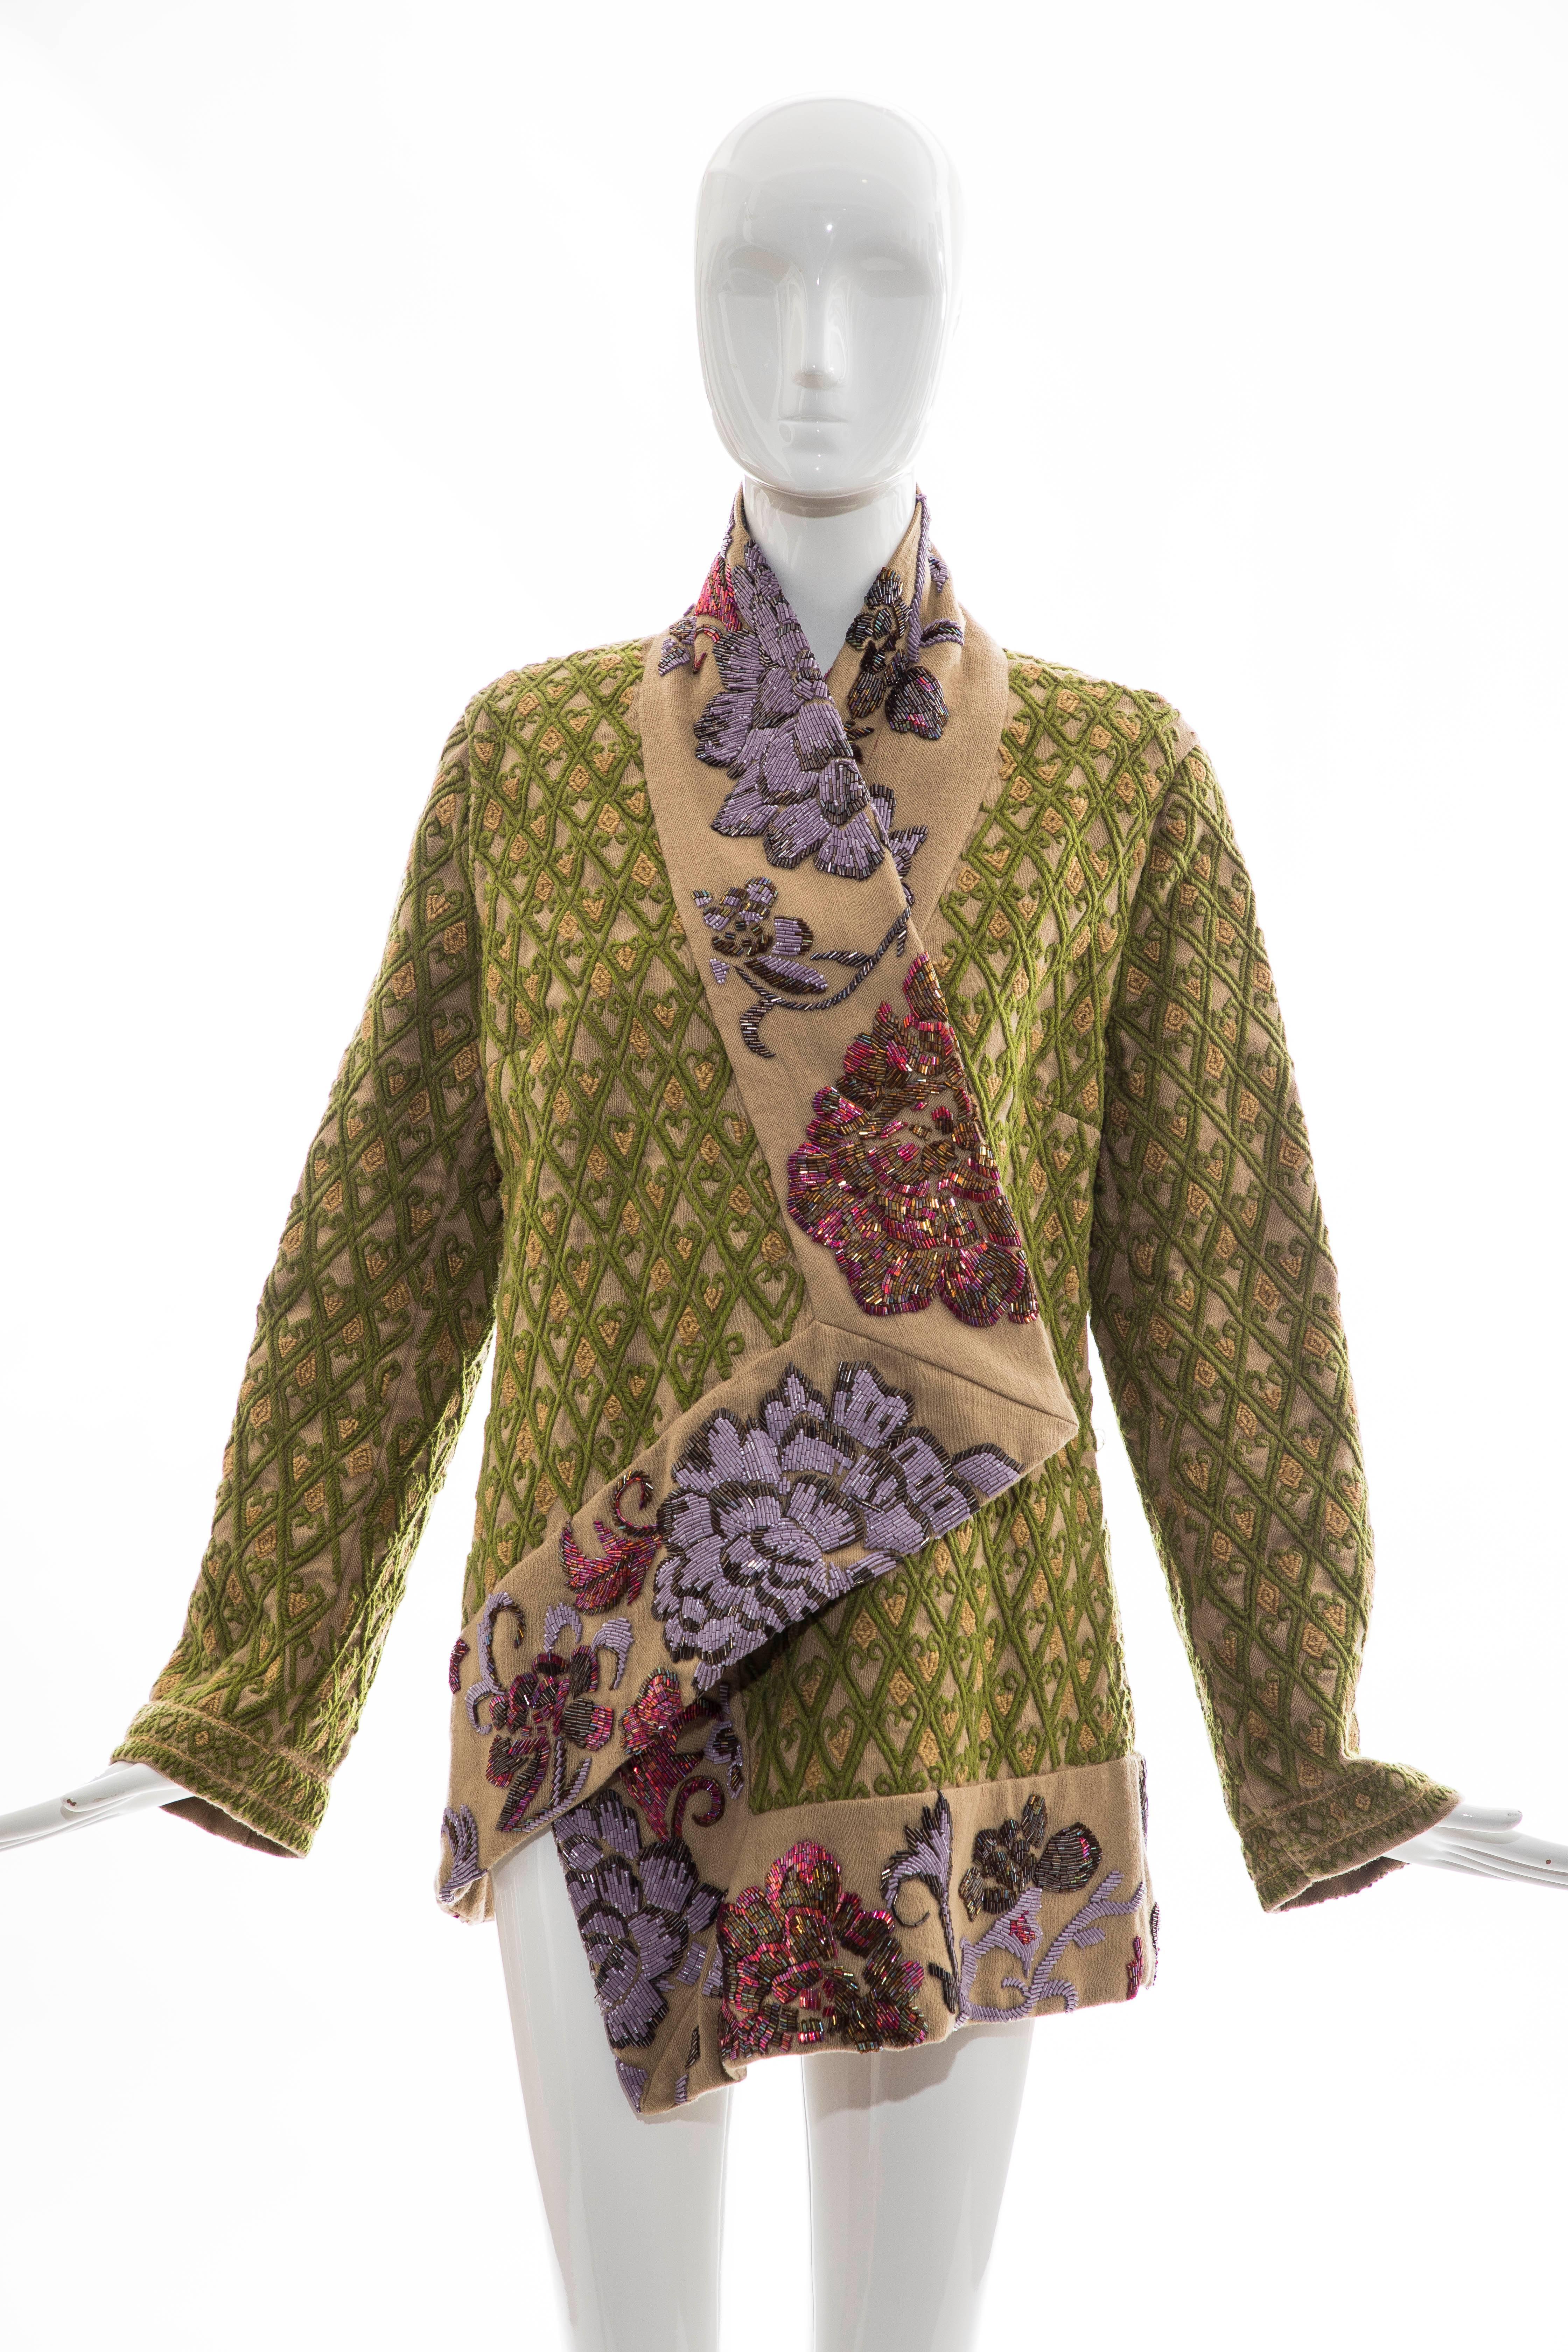 Dries Van Noten Runway Hemp Wool Floral Embroidered Beaded Jacket, Fall 2003 7